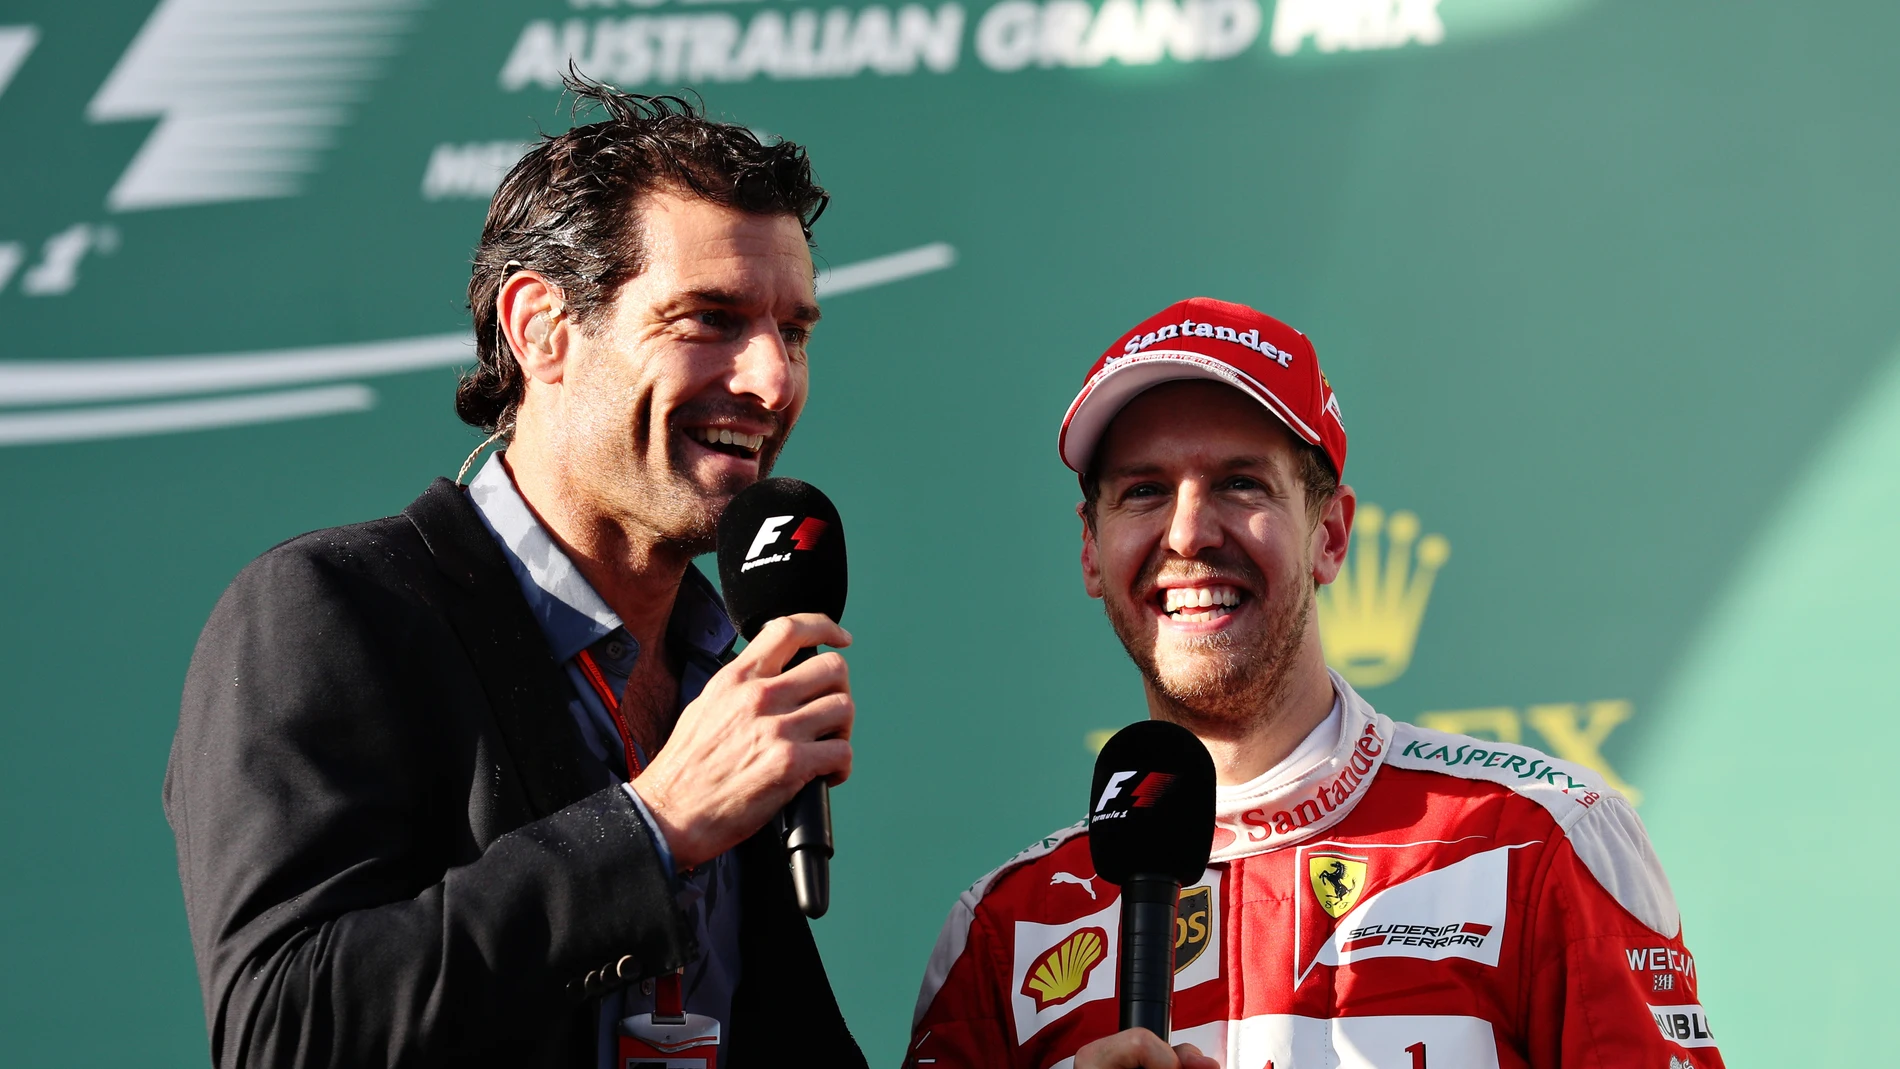 Mark Webber y Sebastian Vettel